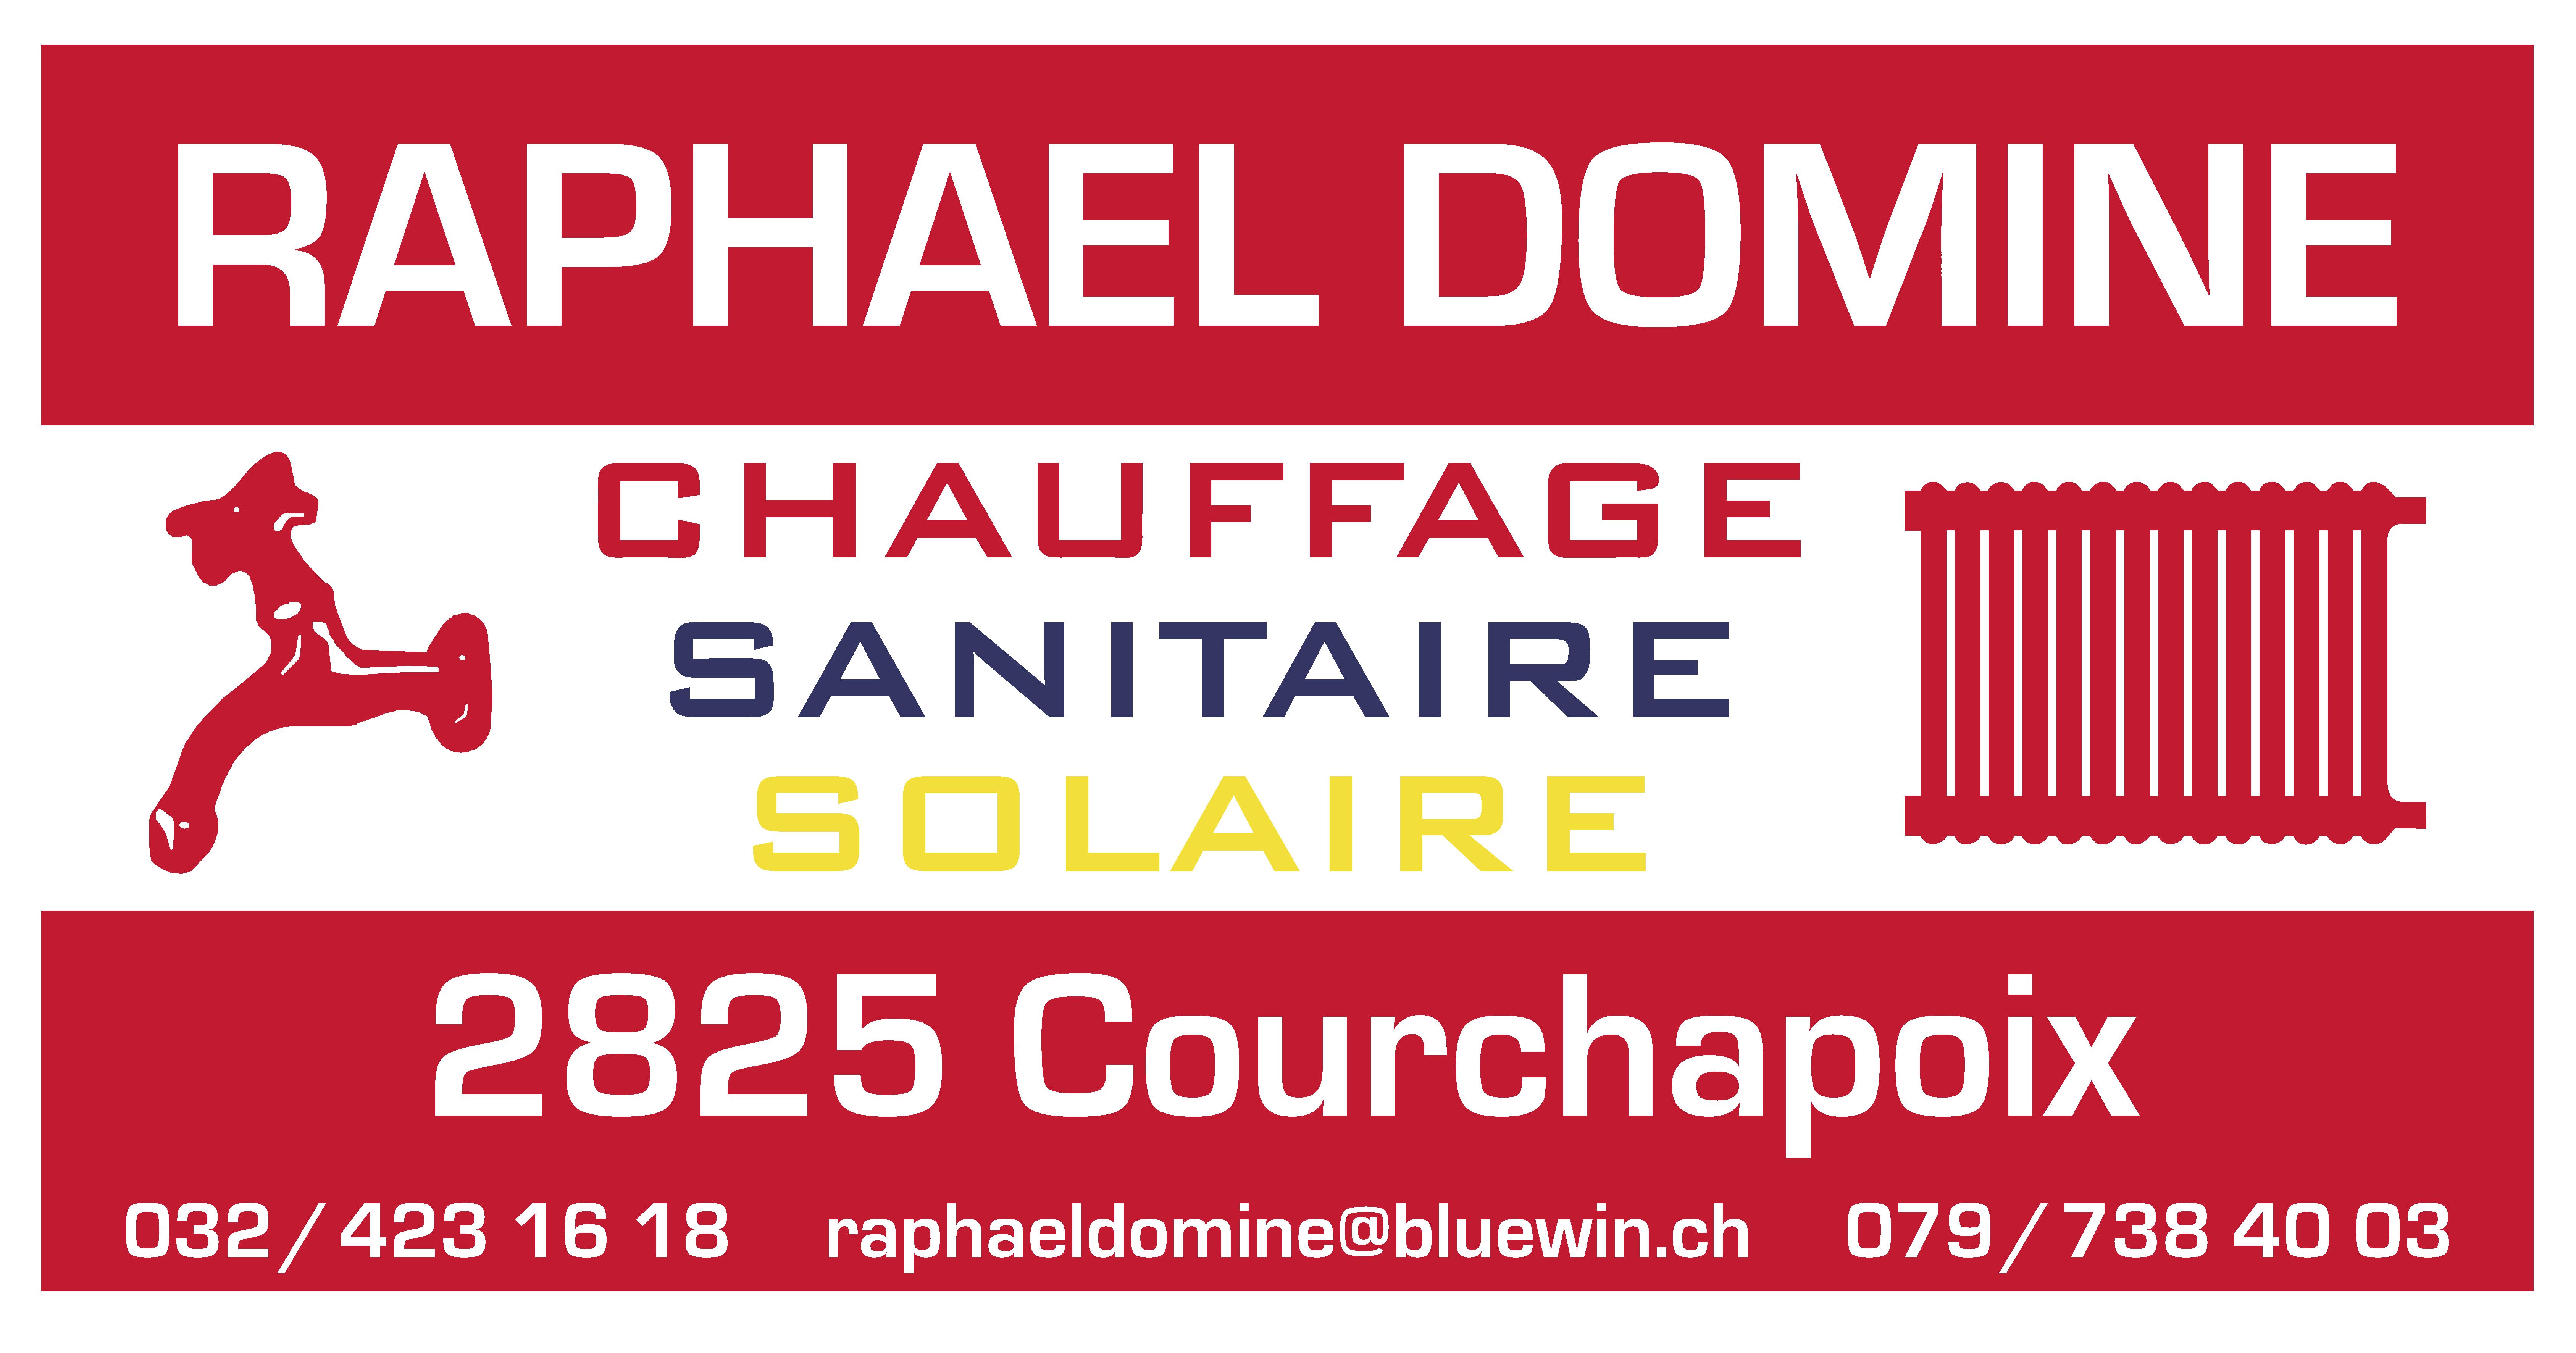 Chauffage-sanitaire-solaire Raphaël Dominé